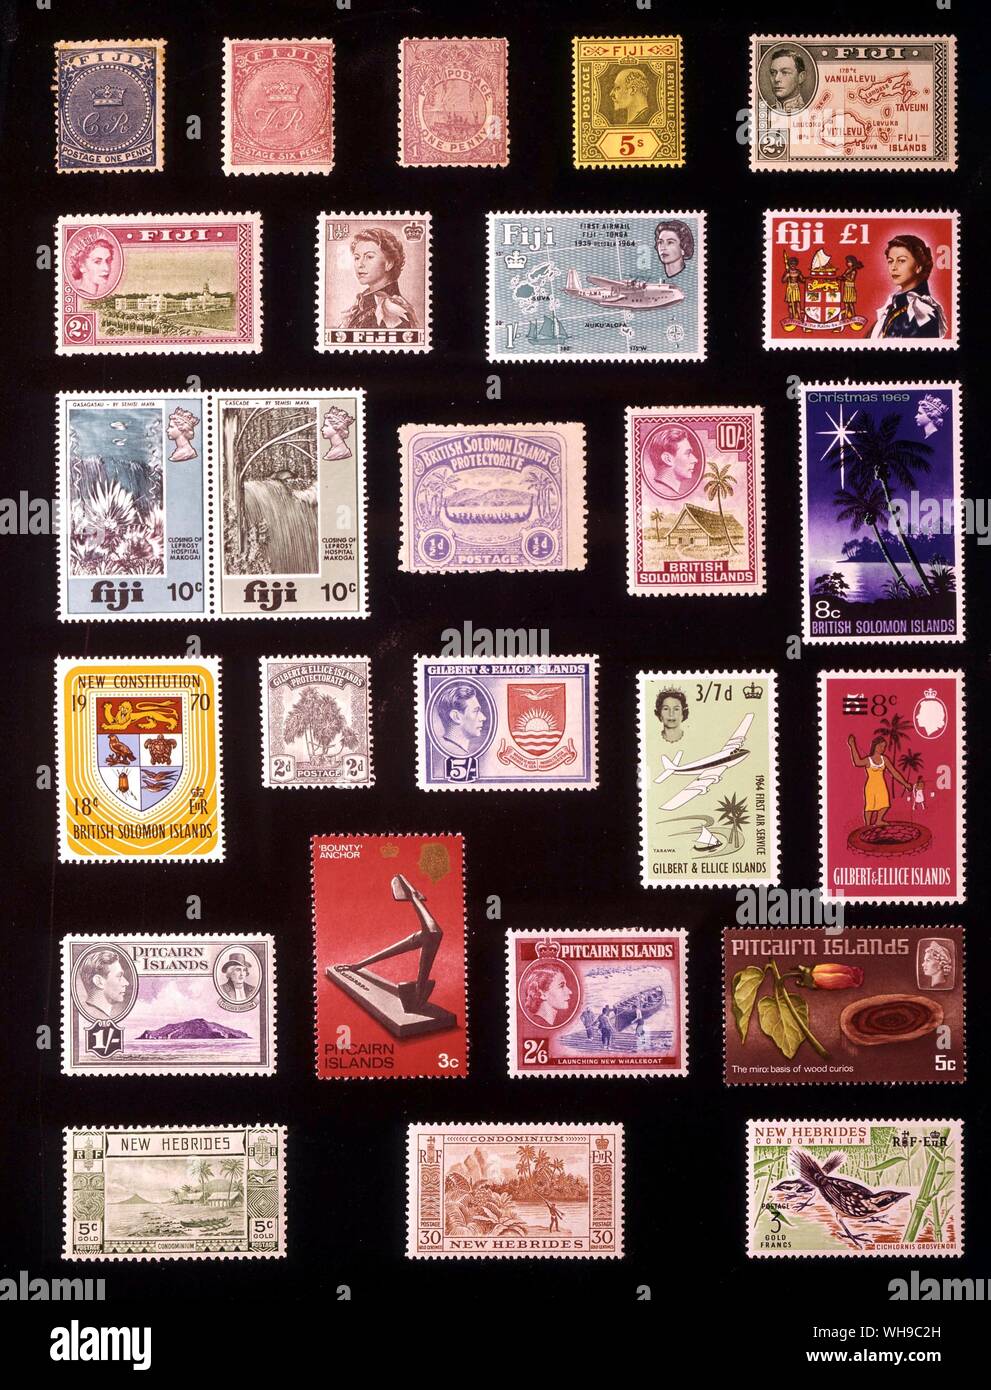 AUSTRALIA E polinesia - Pacifico occidentale Alta commissione: (da sinistra a destra) 1. Fiji, 1 centesimo, 1871, 2. Fiji, 6 pence, 1878, 3. Fiji, 1 centesimo, 1895, 4. Fiji, 5 scellini, 1911, 5. Fiji, 2 pence, 1938, 6. Fiji, 2 pence, 1954, 7. Fiji, 1,5 pence, 1962, 8. Fiji, 1 scellino, 1964, 9. Fiji, 1 pound, 1968, 10. Fiji, 10 + 10 centesimi, 1970, 11. British Isole Salomone protettorato, 0,5 penny, 1907, 12. British Isole Salomone, 10 denari, 1942, 13. British Isole Salomone, 8 centesimi, 1969, 14. British Isole Salomone, 18 centesimi, 1970, 15. Gilbert e Ellice Islands, 2 pence, 1911, 16. Gilbert e Ellice Foto Stock